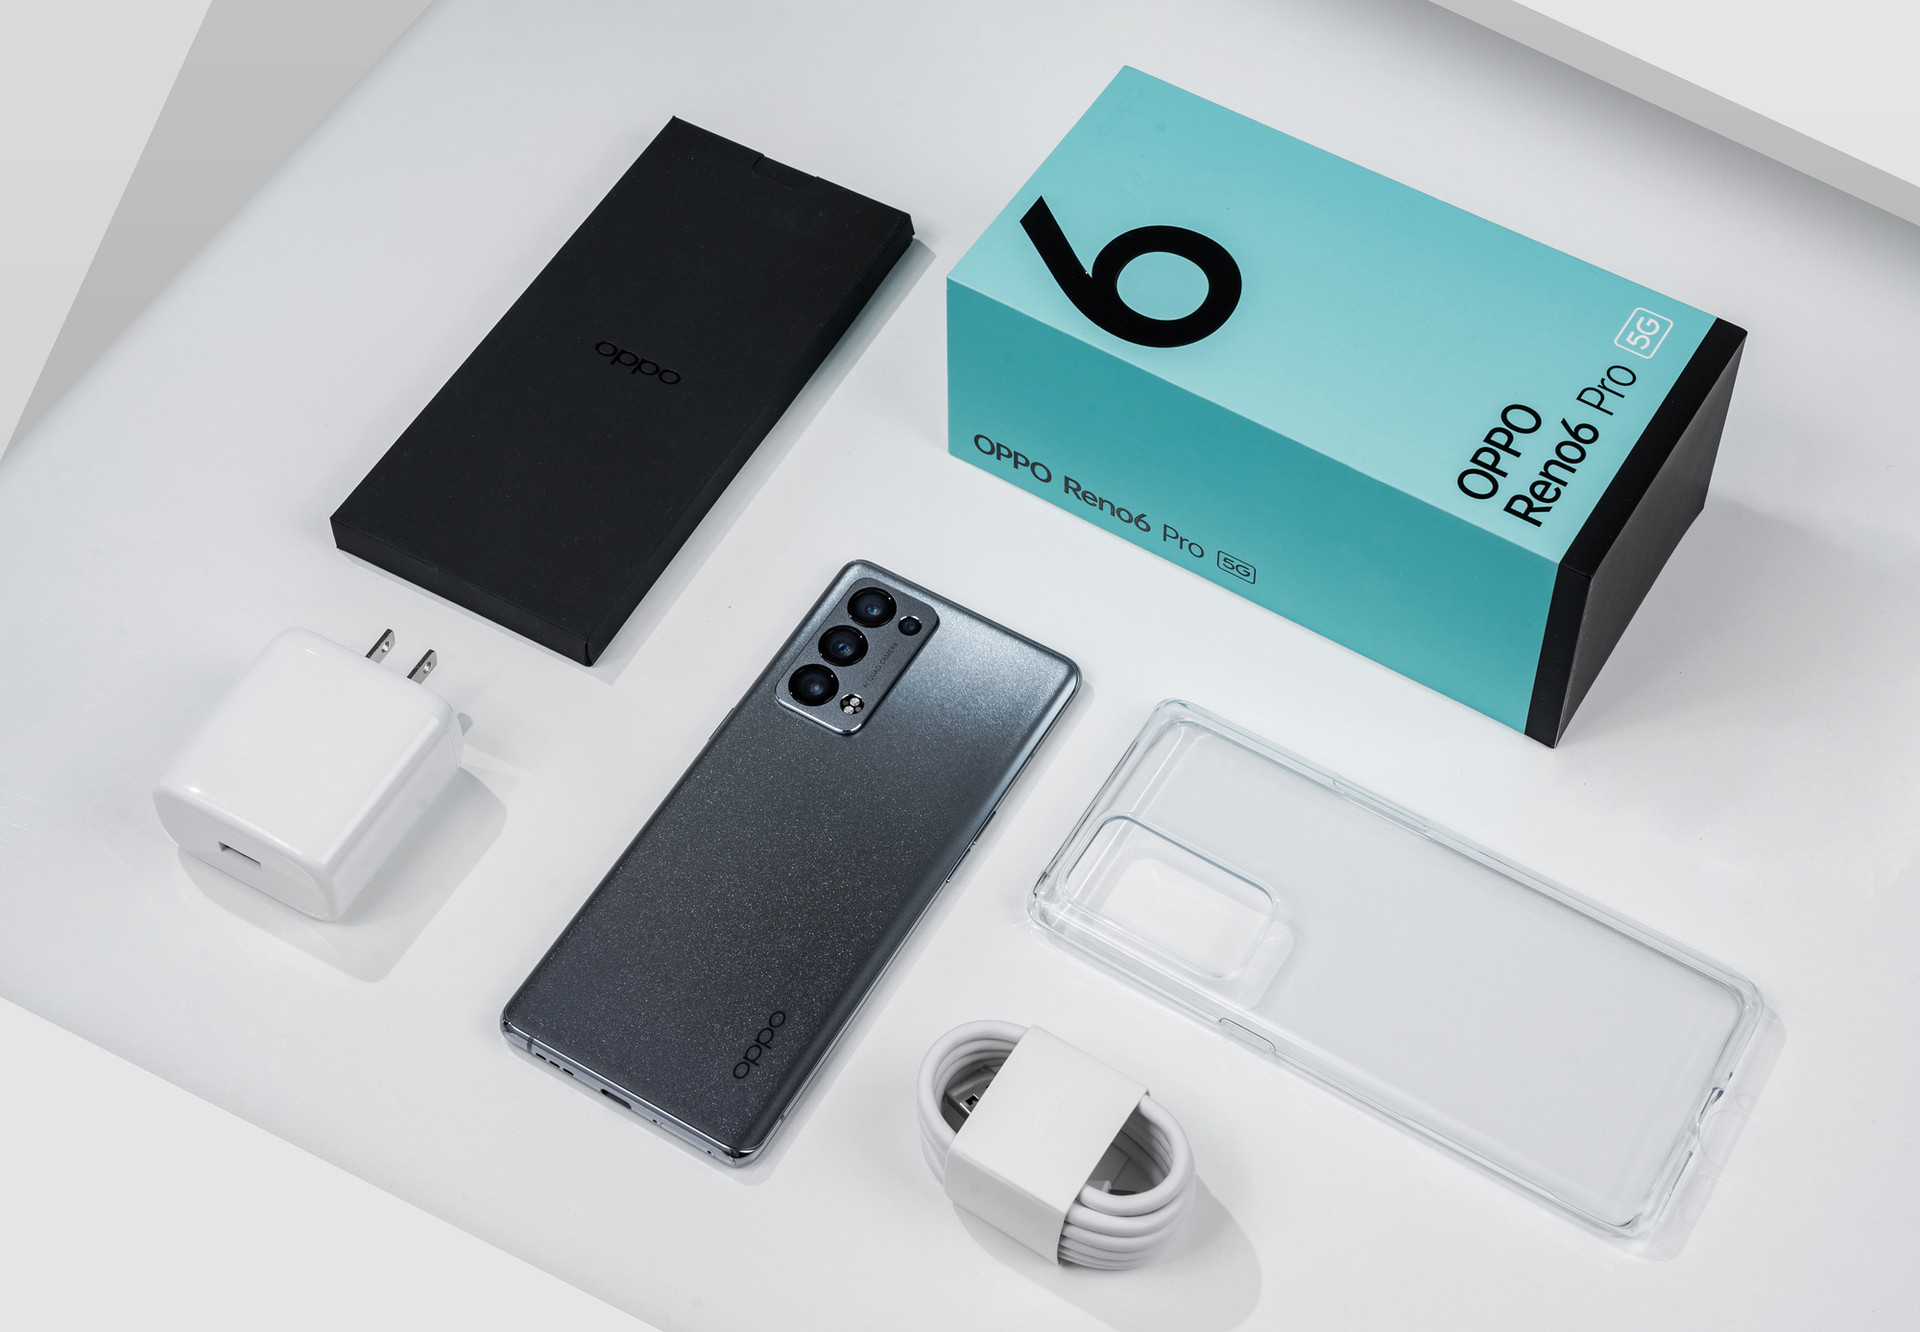 OPPO ra mắt mẫu smartphone cao cấp nhất trong thế hệ Reno thứ 6  - Ảnh 1.